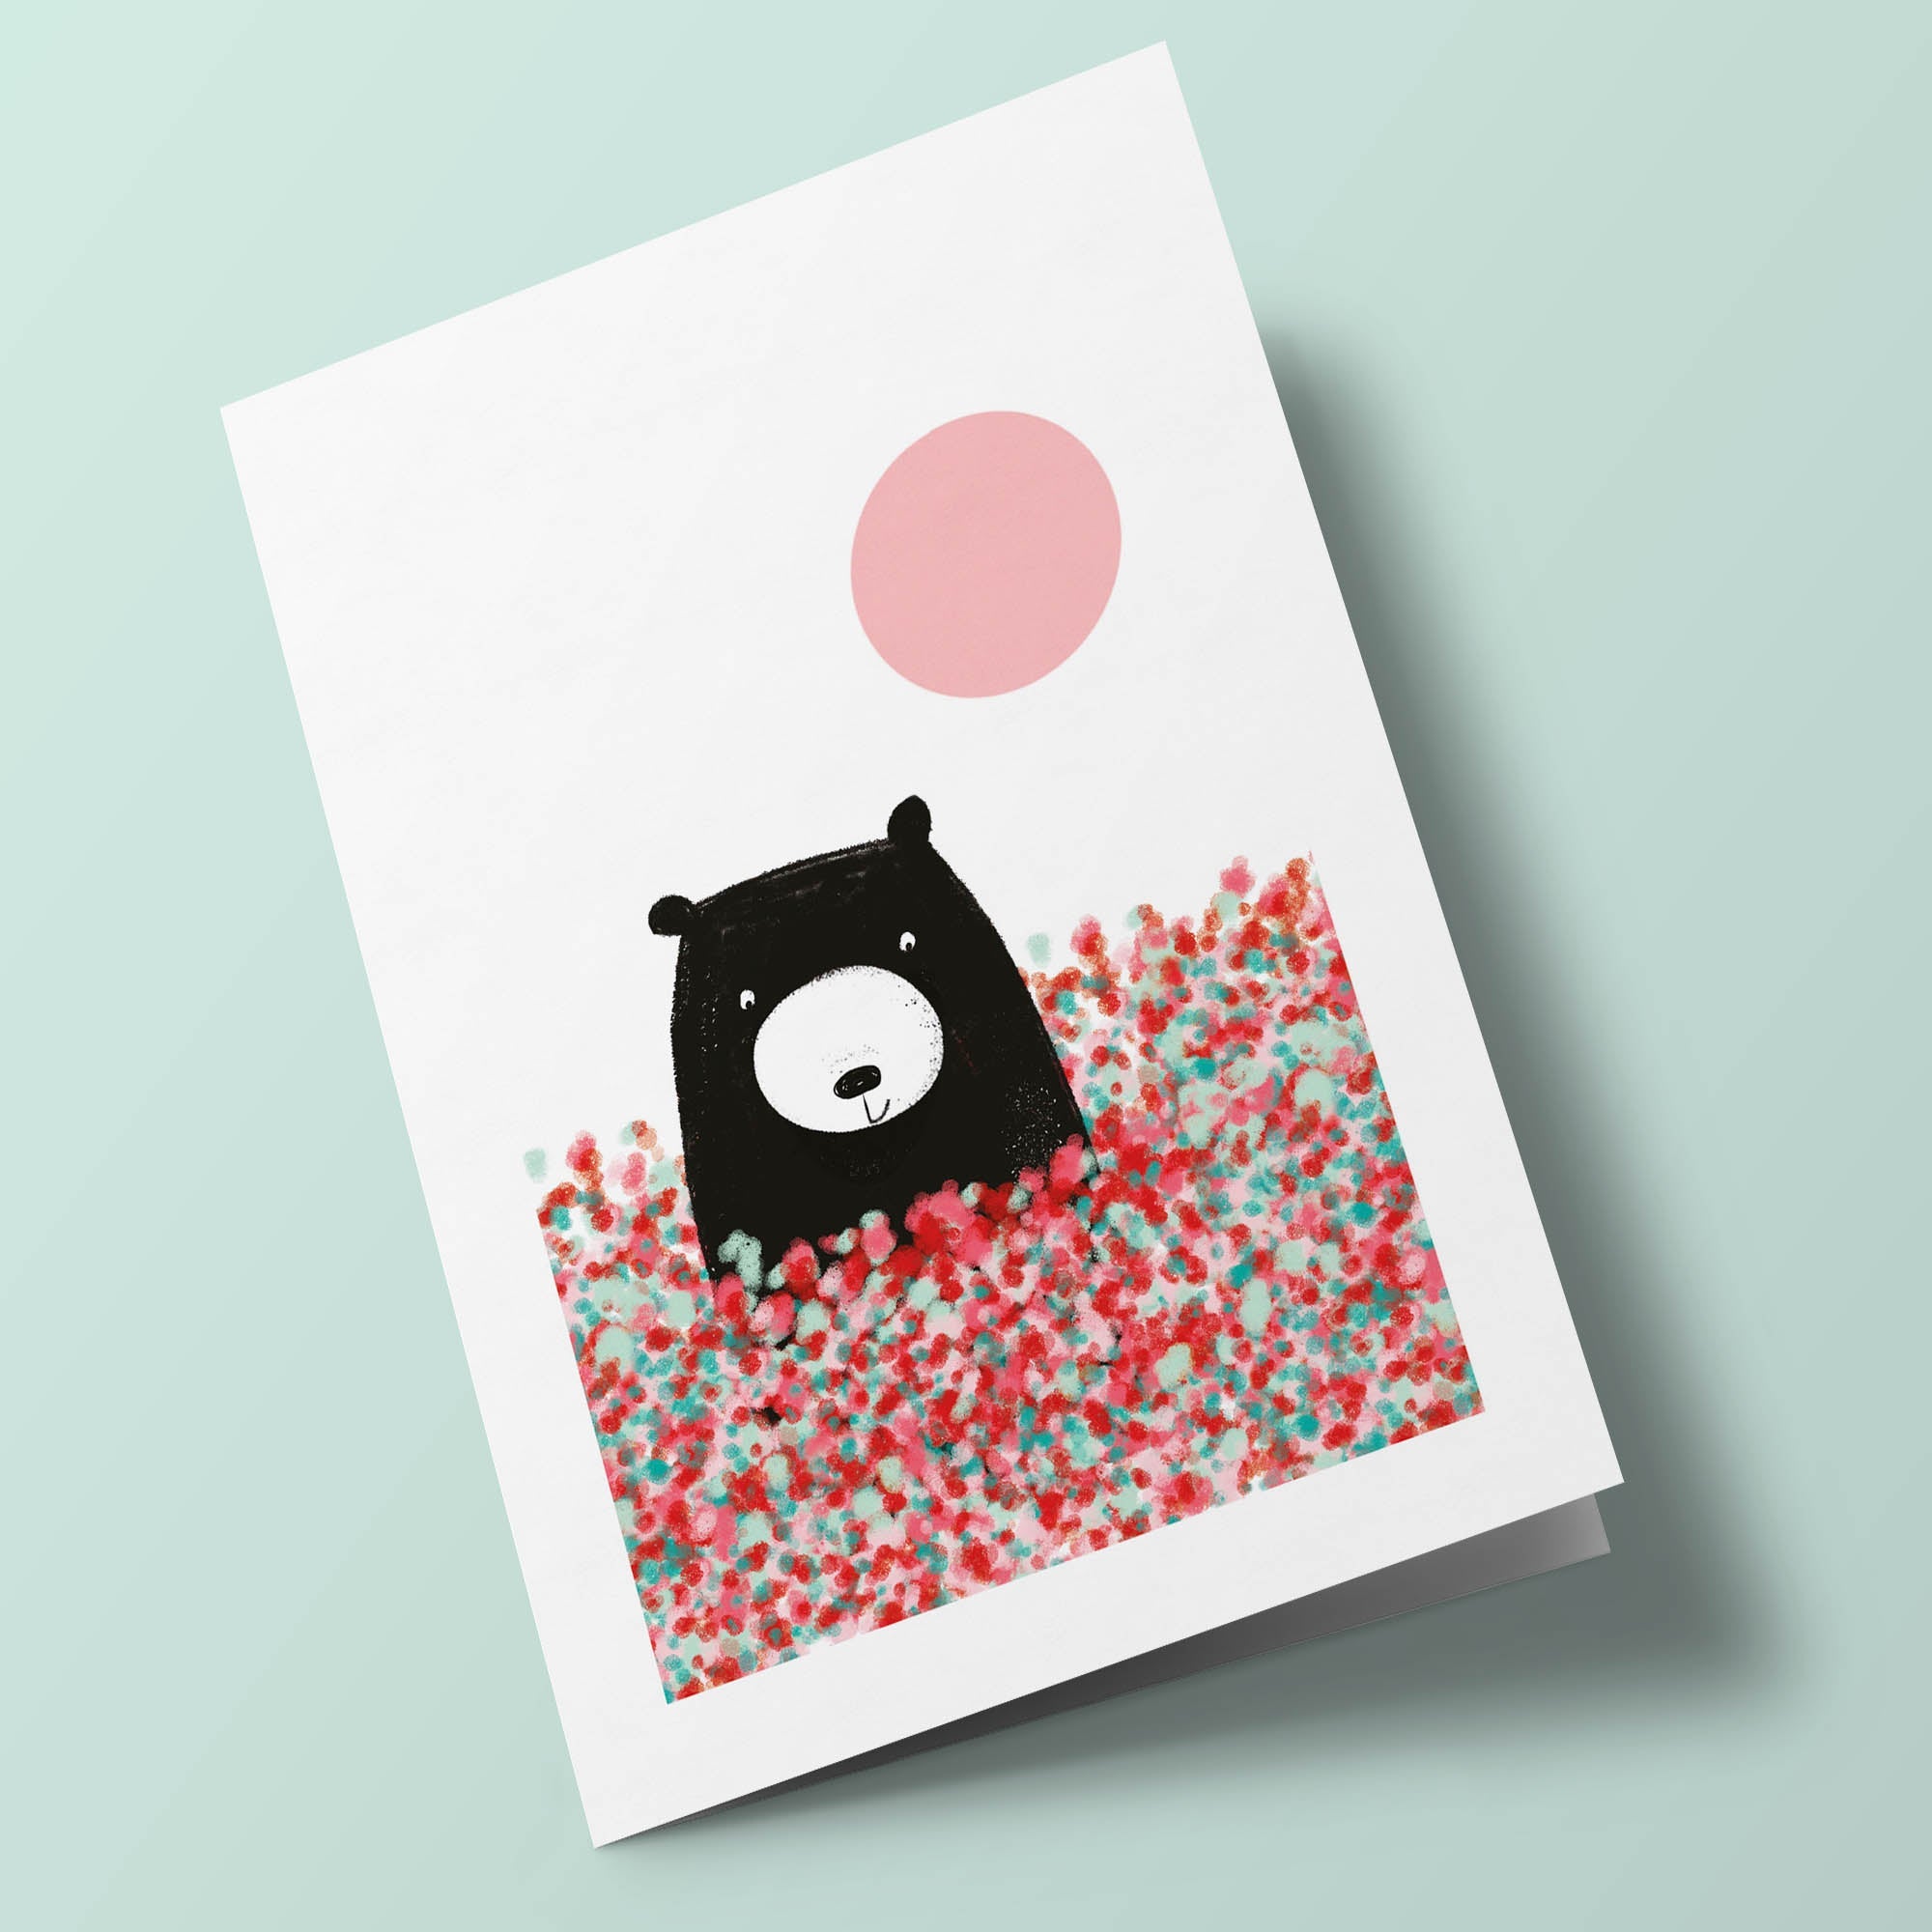 Bear - bear in a field of flowers